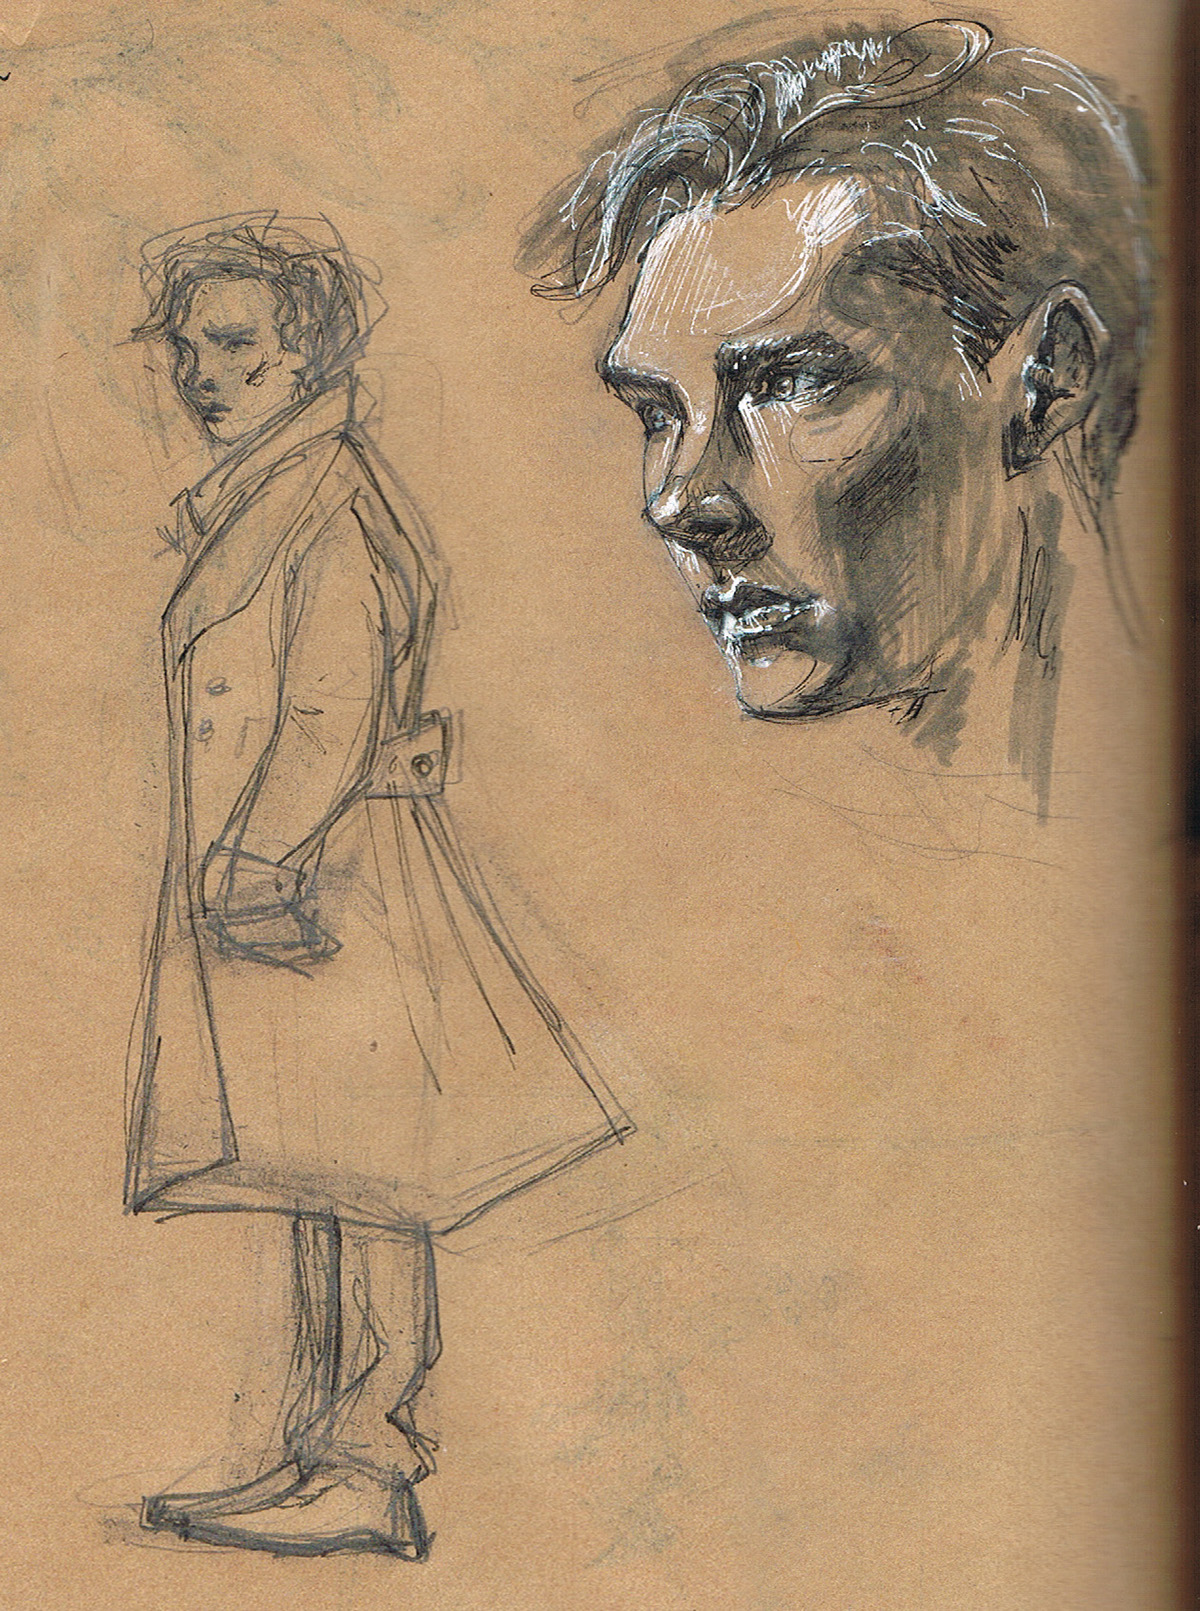 sherlock. Sherlock benedict cumberbatch portrait pencil holmes watson elementary fanart fan art BBC